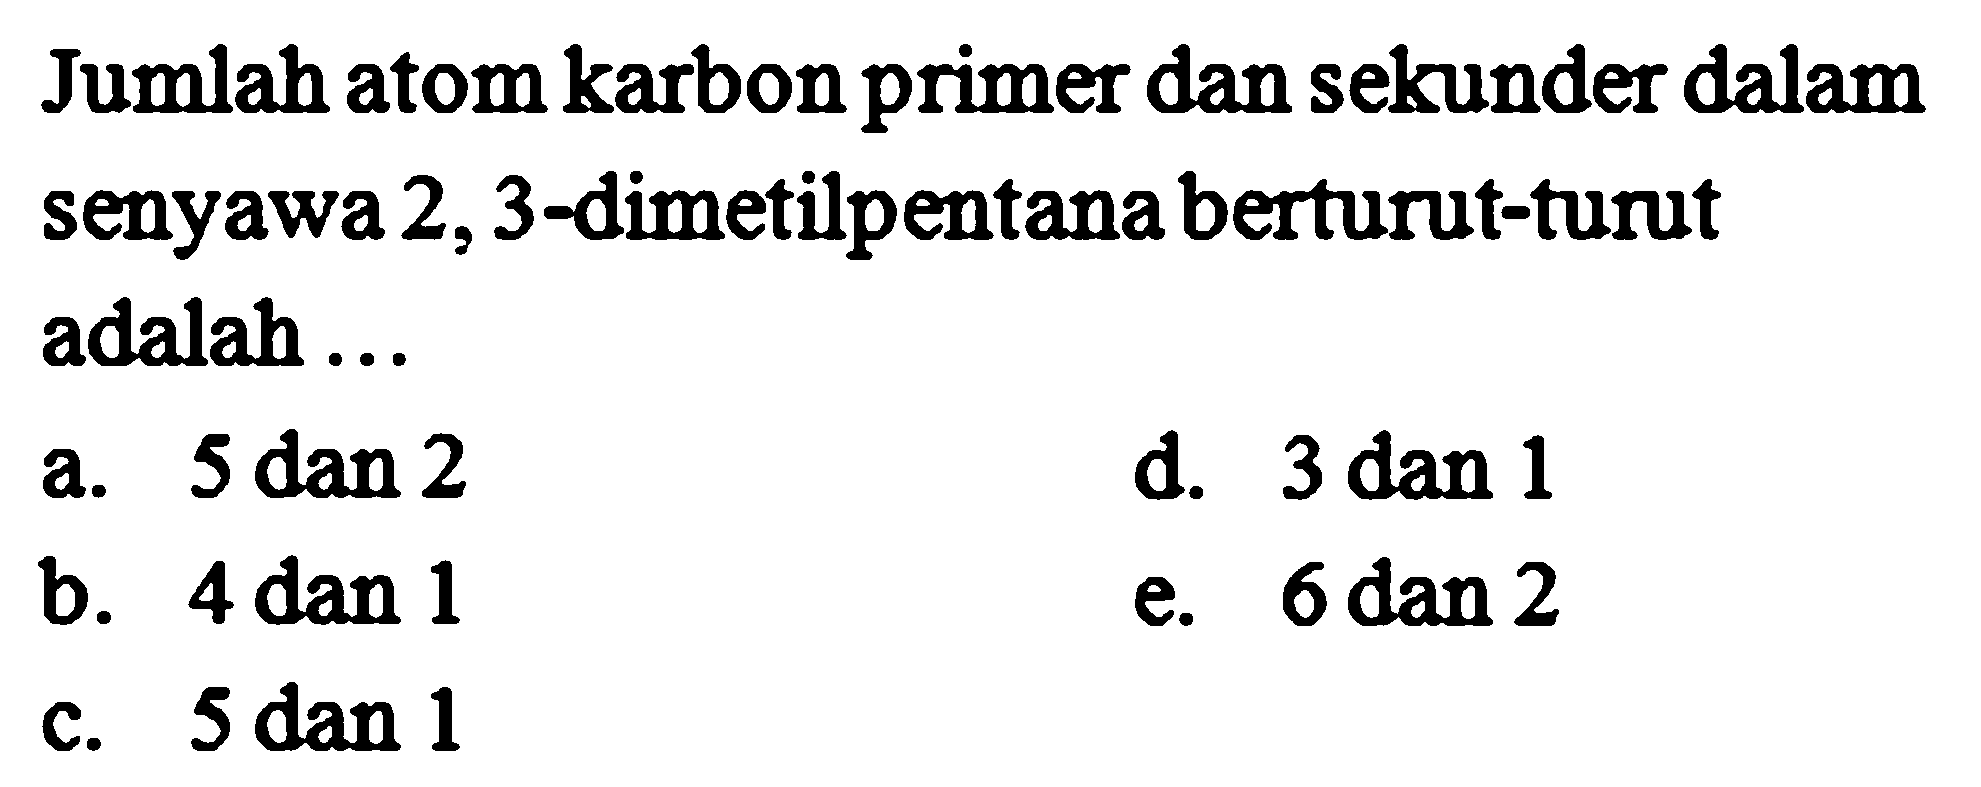 Jumlah atom karbon primer dan sekunder dalam senyawa 2,3-dimetilpentana berturut-turut adalah ... 